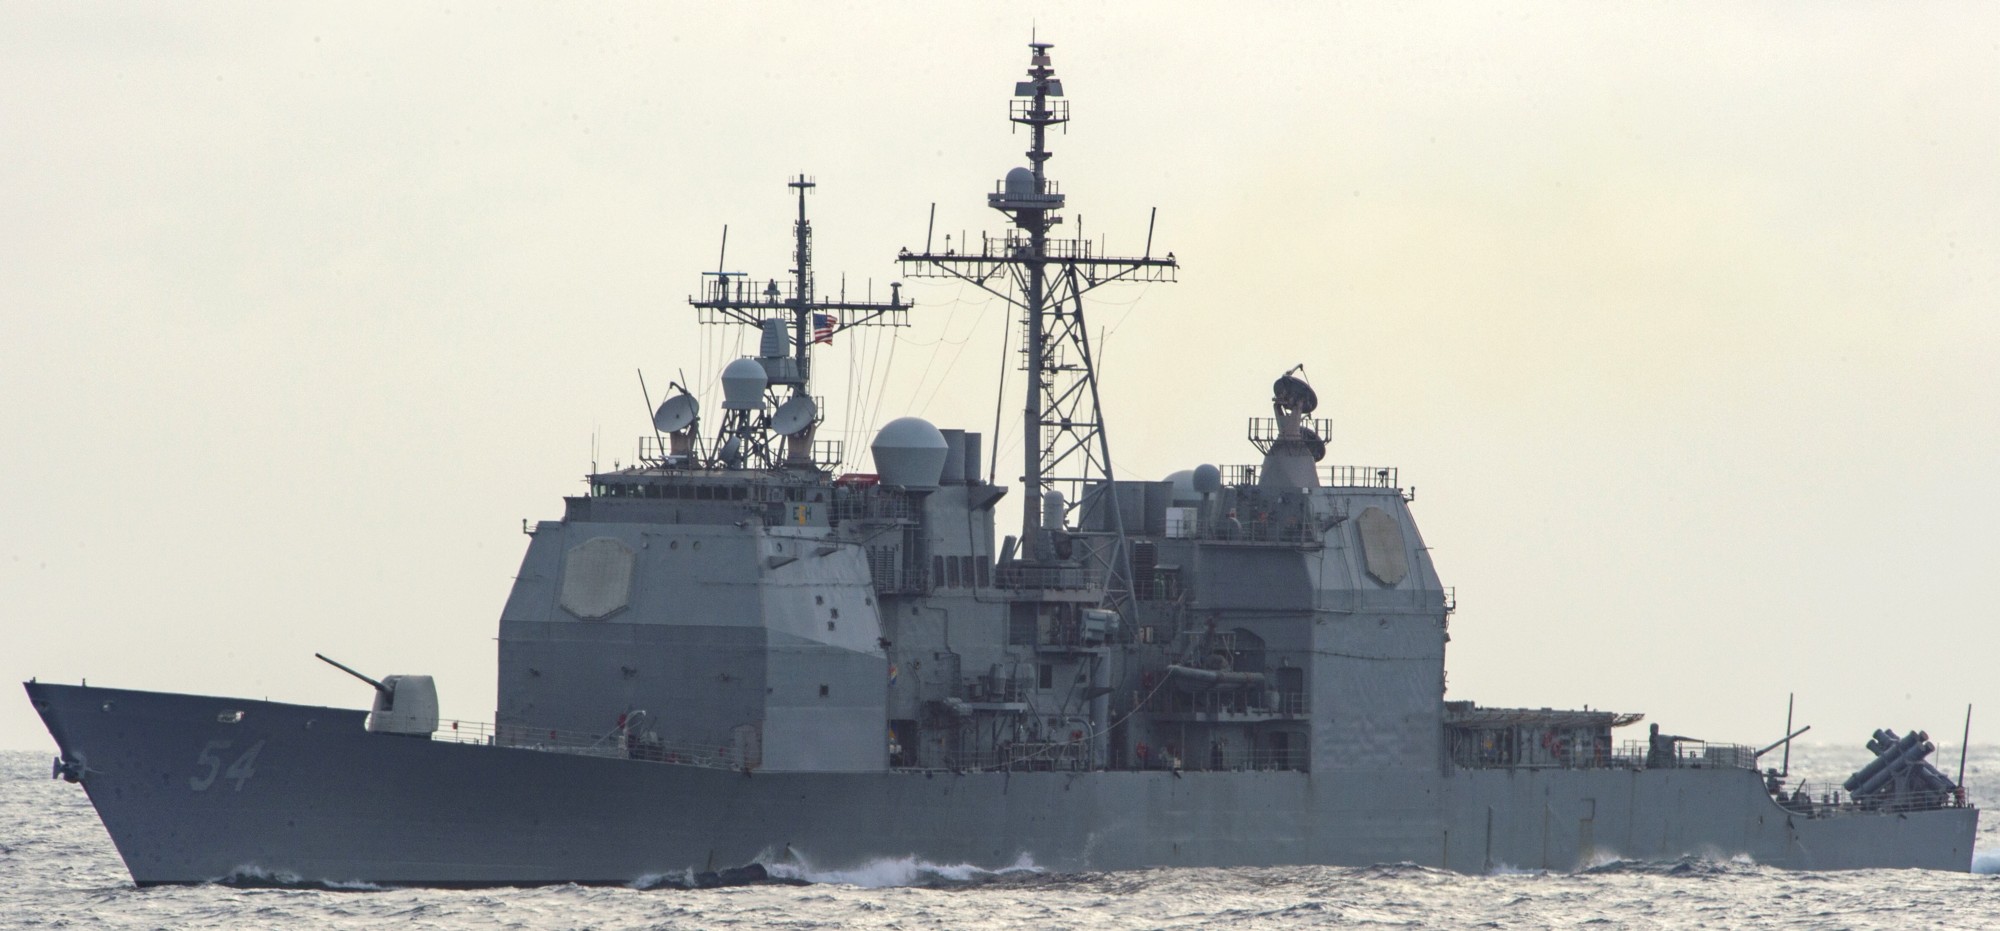 cg-54 uss antietam ticonderoga class guided missile cruiser aegis us navy pacific ocean 114